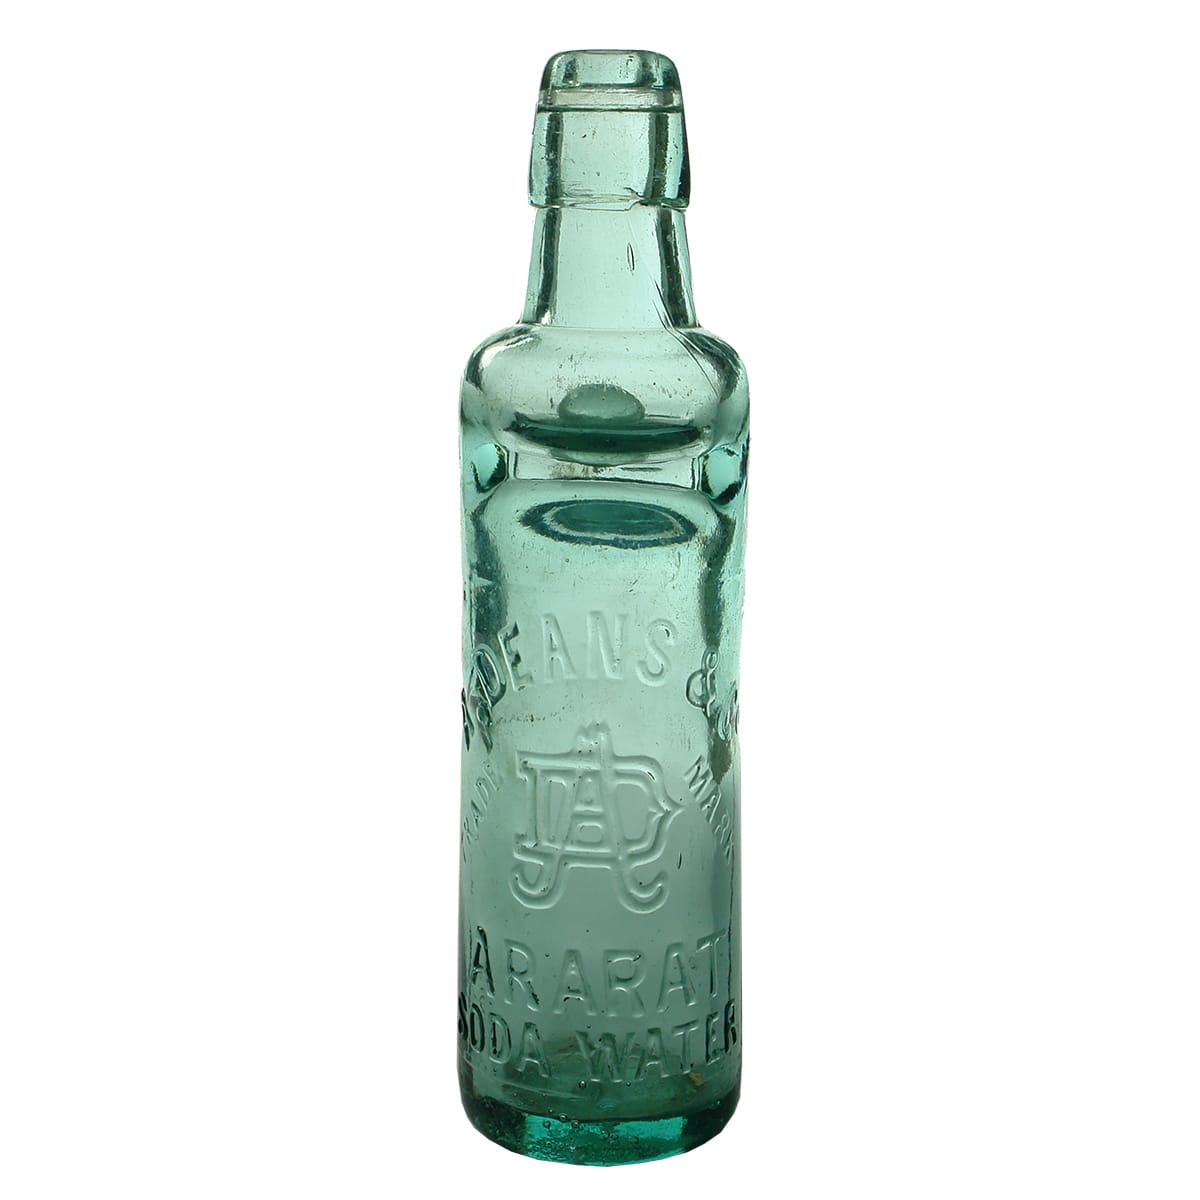 Codd. A. Deans & Co, Ararat. Soda Water. All Way Pour. Aqua. 10 oz. (Victoria)